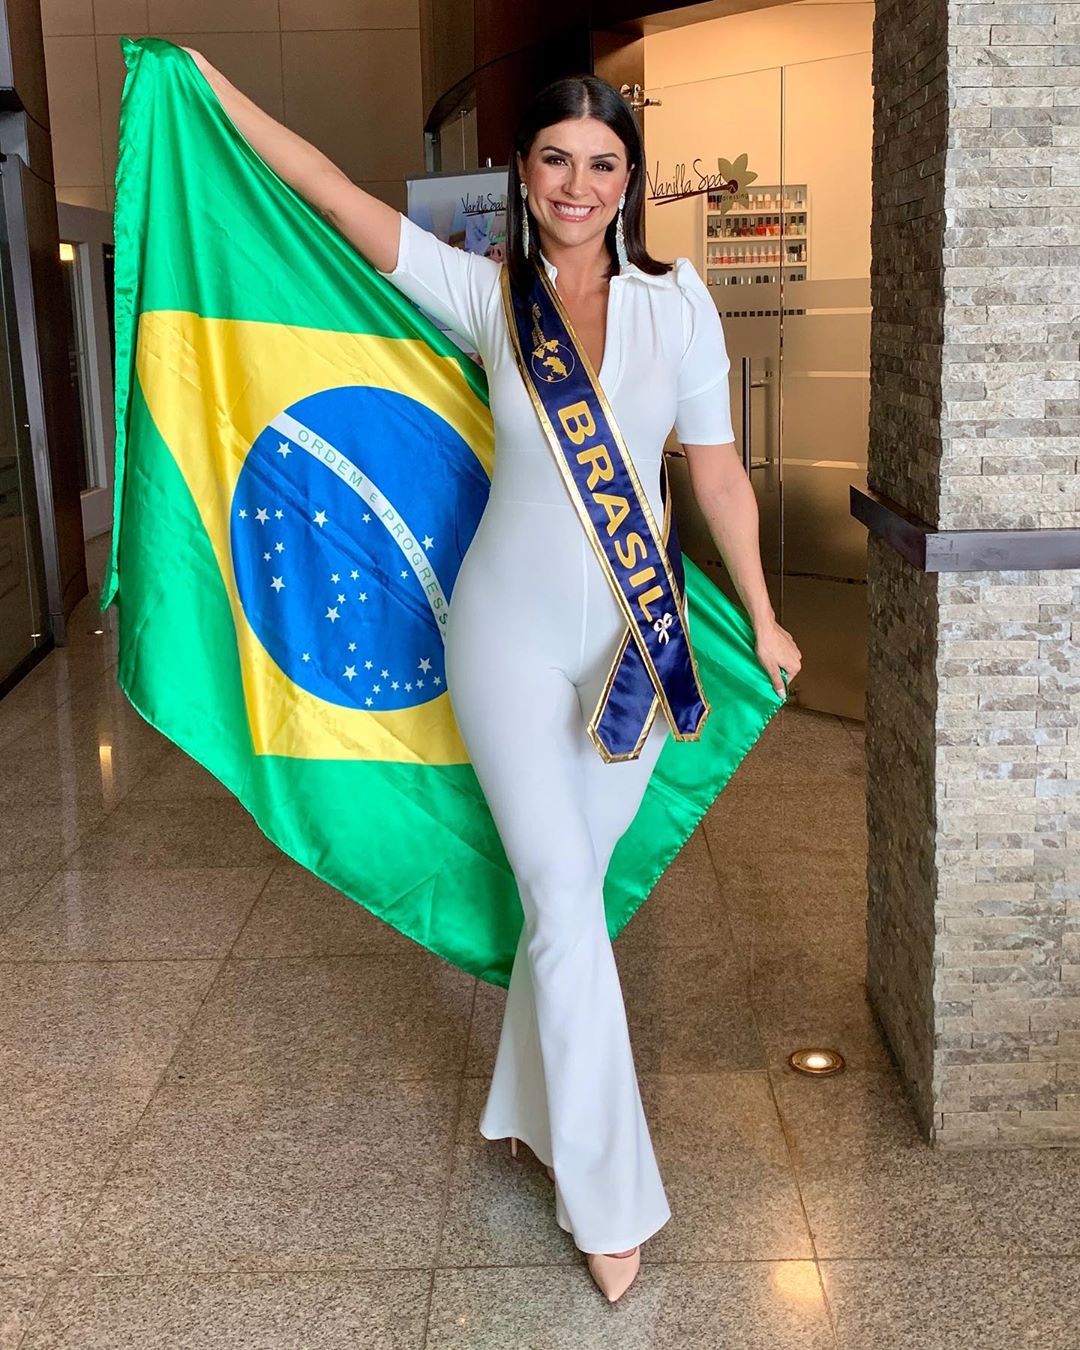 thylara brenner, miss brasil continentes unidos 2019. - Página 7 69137910